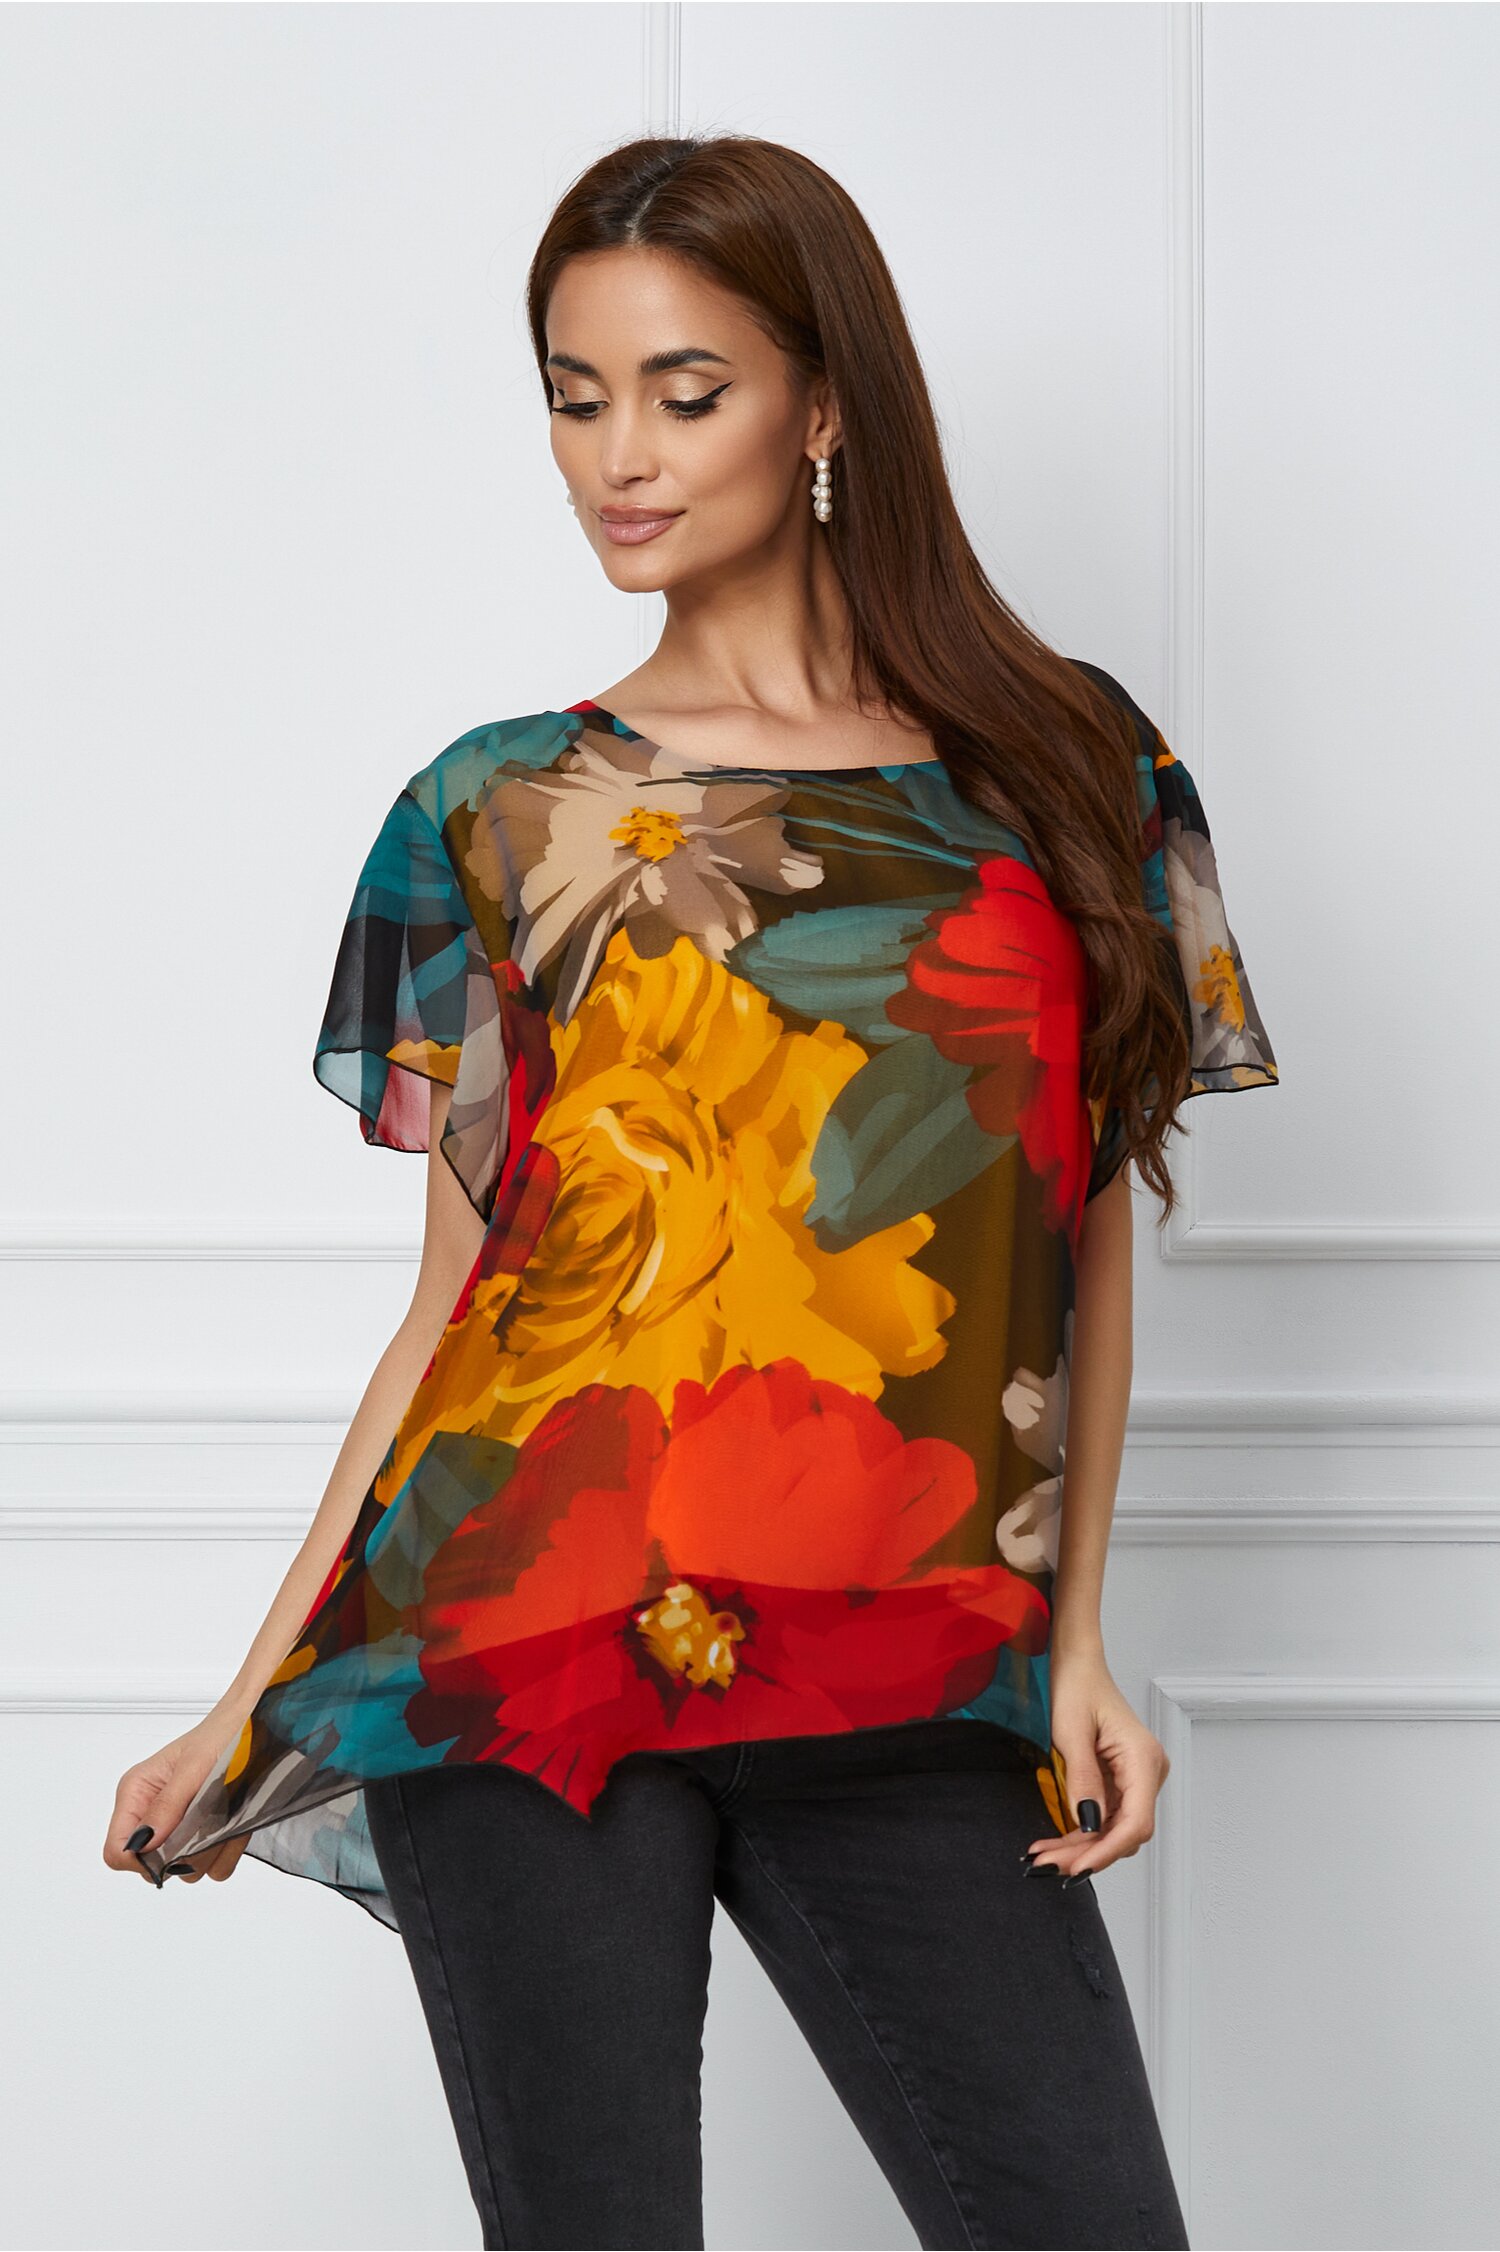 Bluza Luana cu imprimeu floral galben-rosu 2022 ❤️ Pret Super dyfashion imagine noua 2022